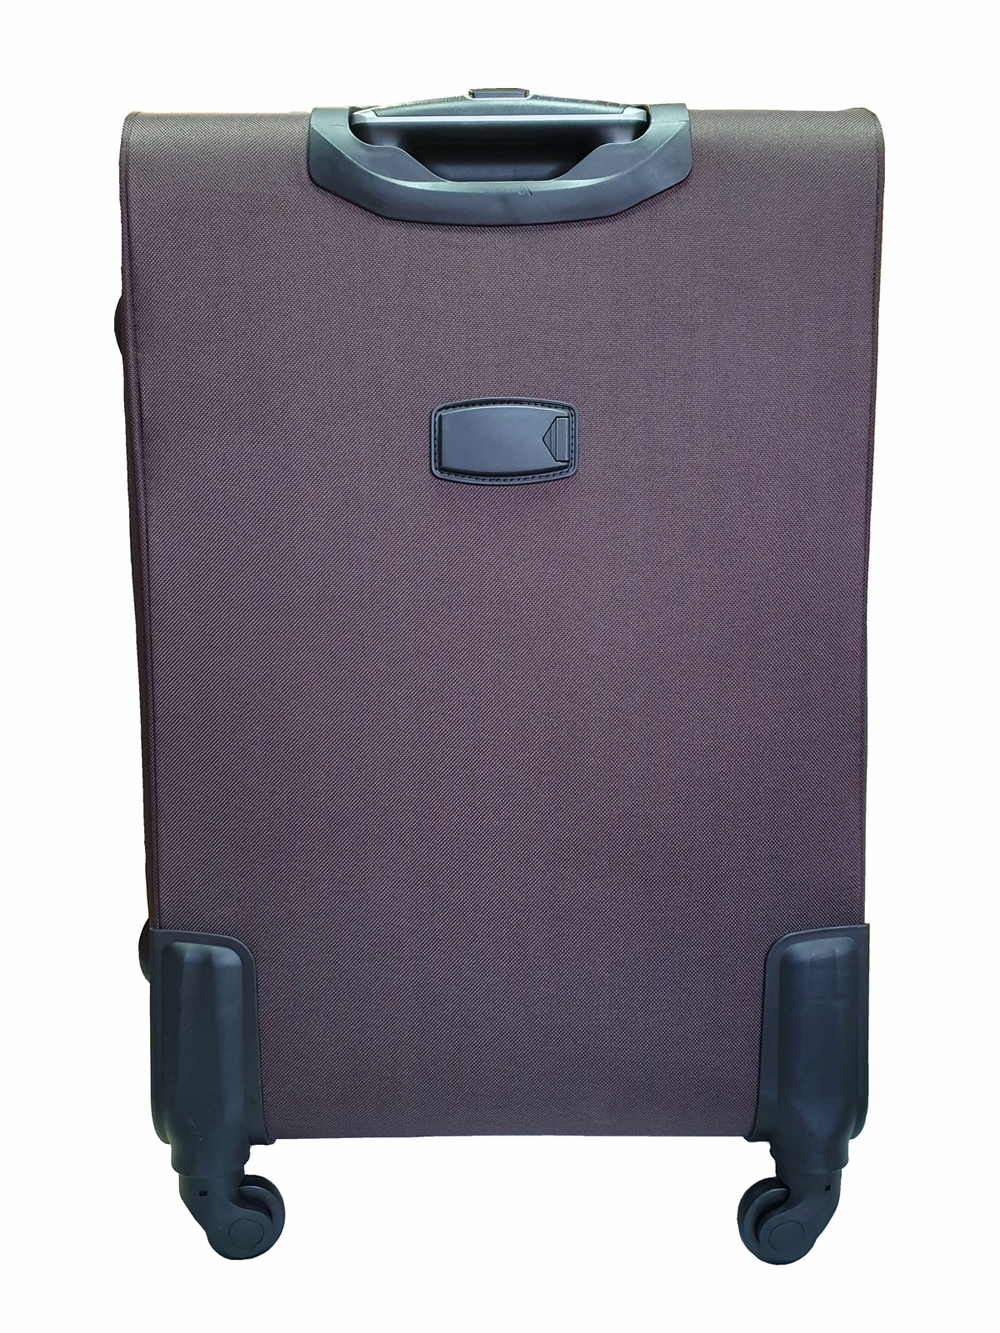 Чемодан на колесах тканевый L’case Barcelona размера XL (82х54х33 (+5) см), объем 138 литров, вес 4.5 кг, Кофейный